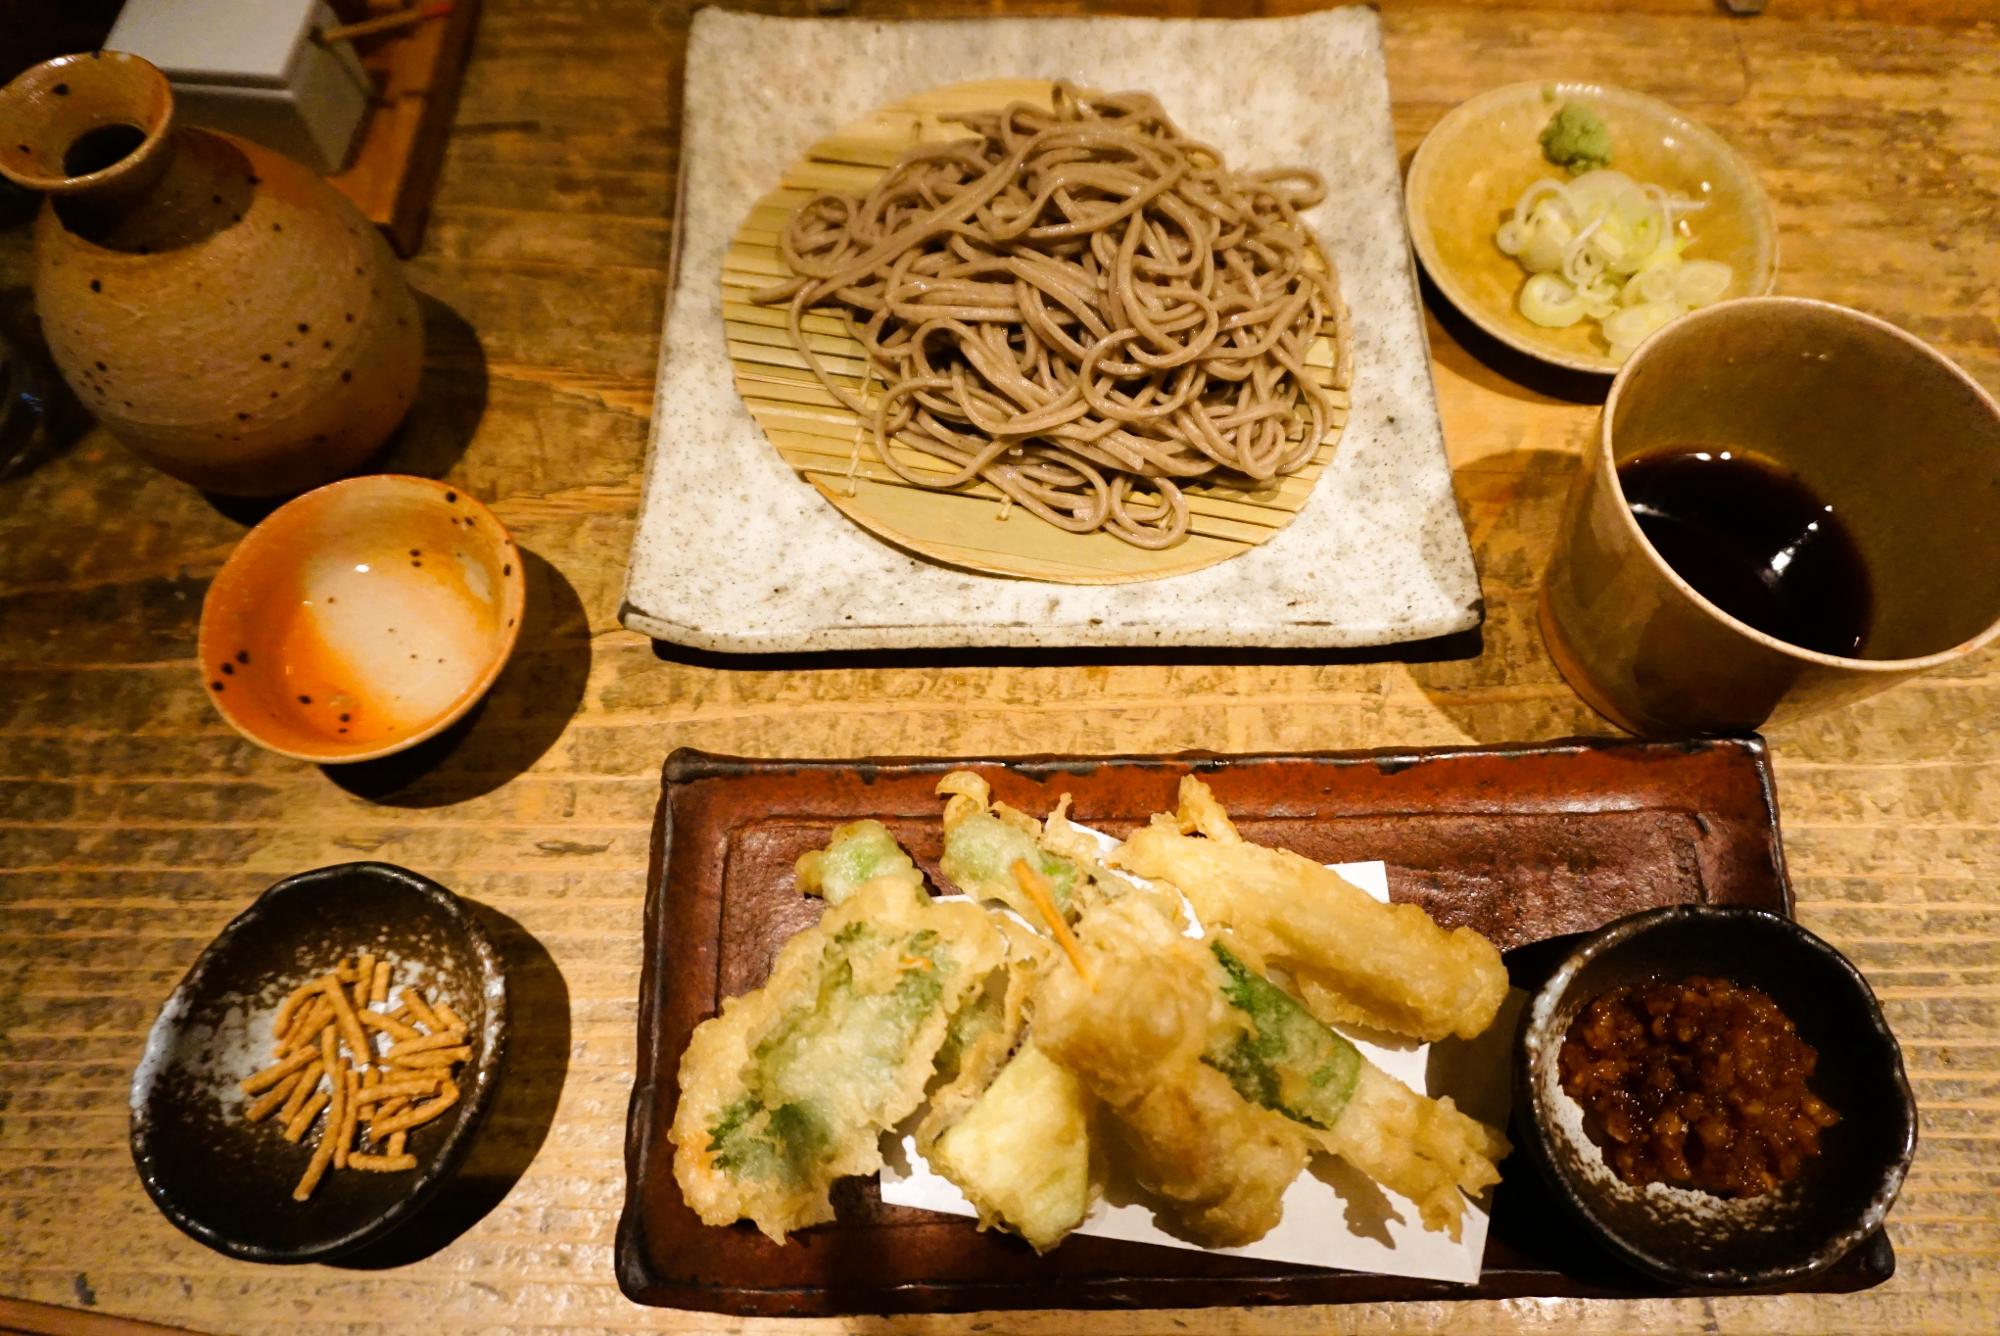 切り蕎麦は細切りか太麺を選べるので細切りにしました。天ぷらもたっぷり。手前左にあるのは、蕎麦のフライのお通し